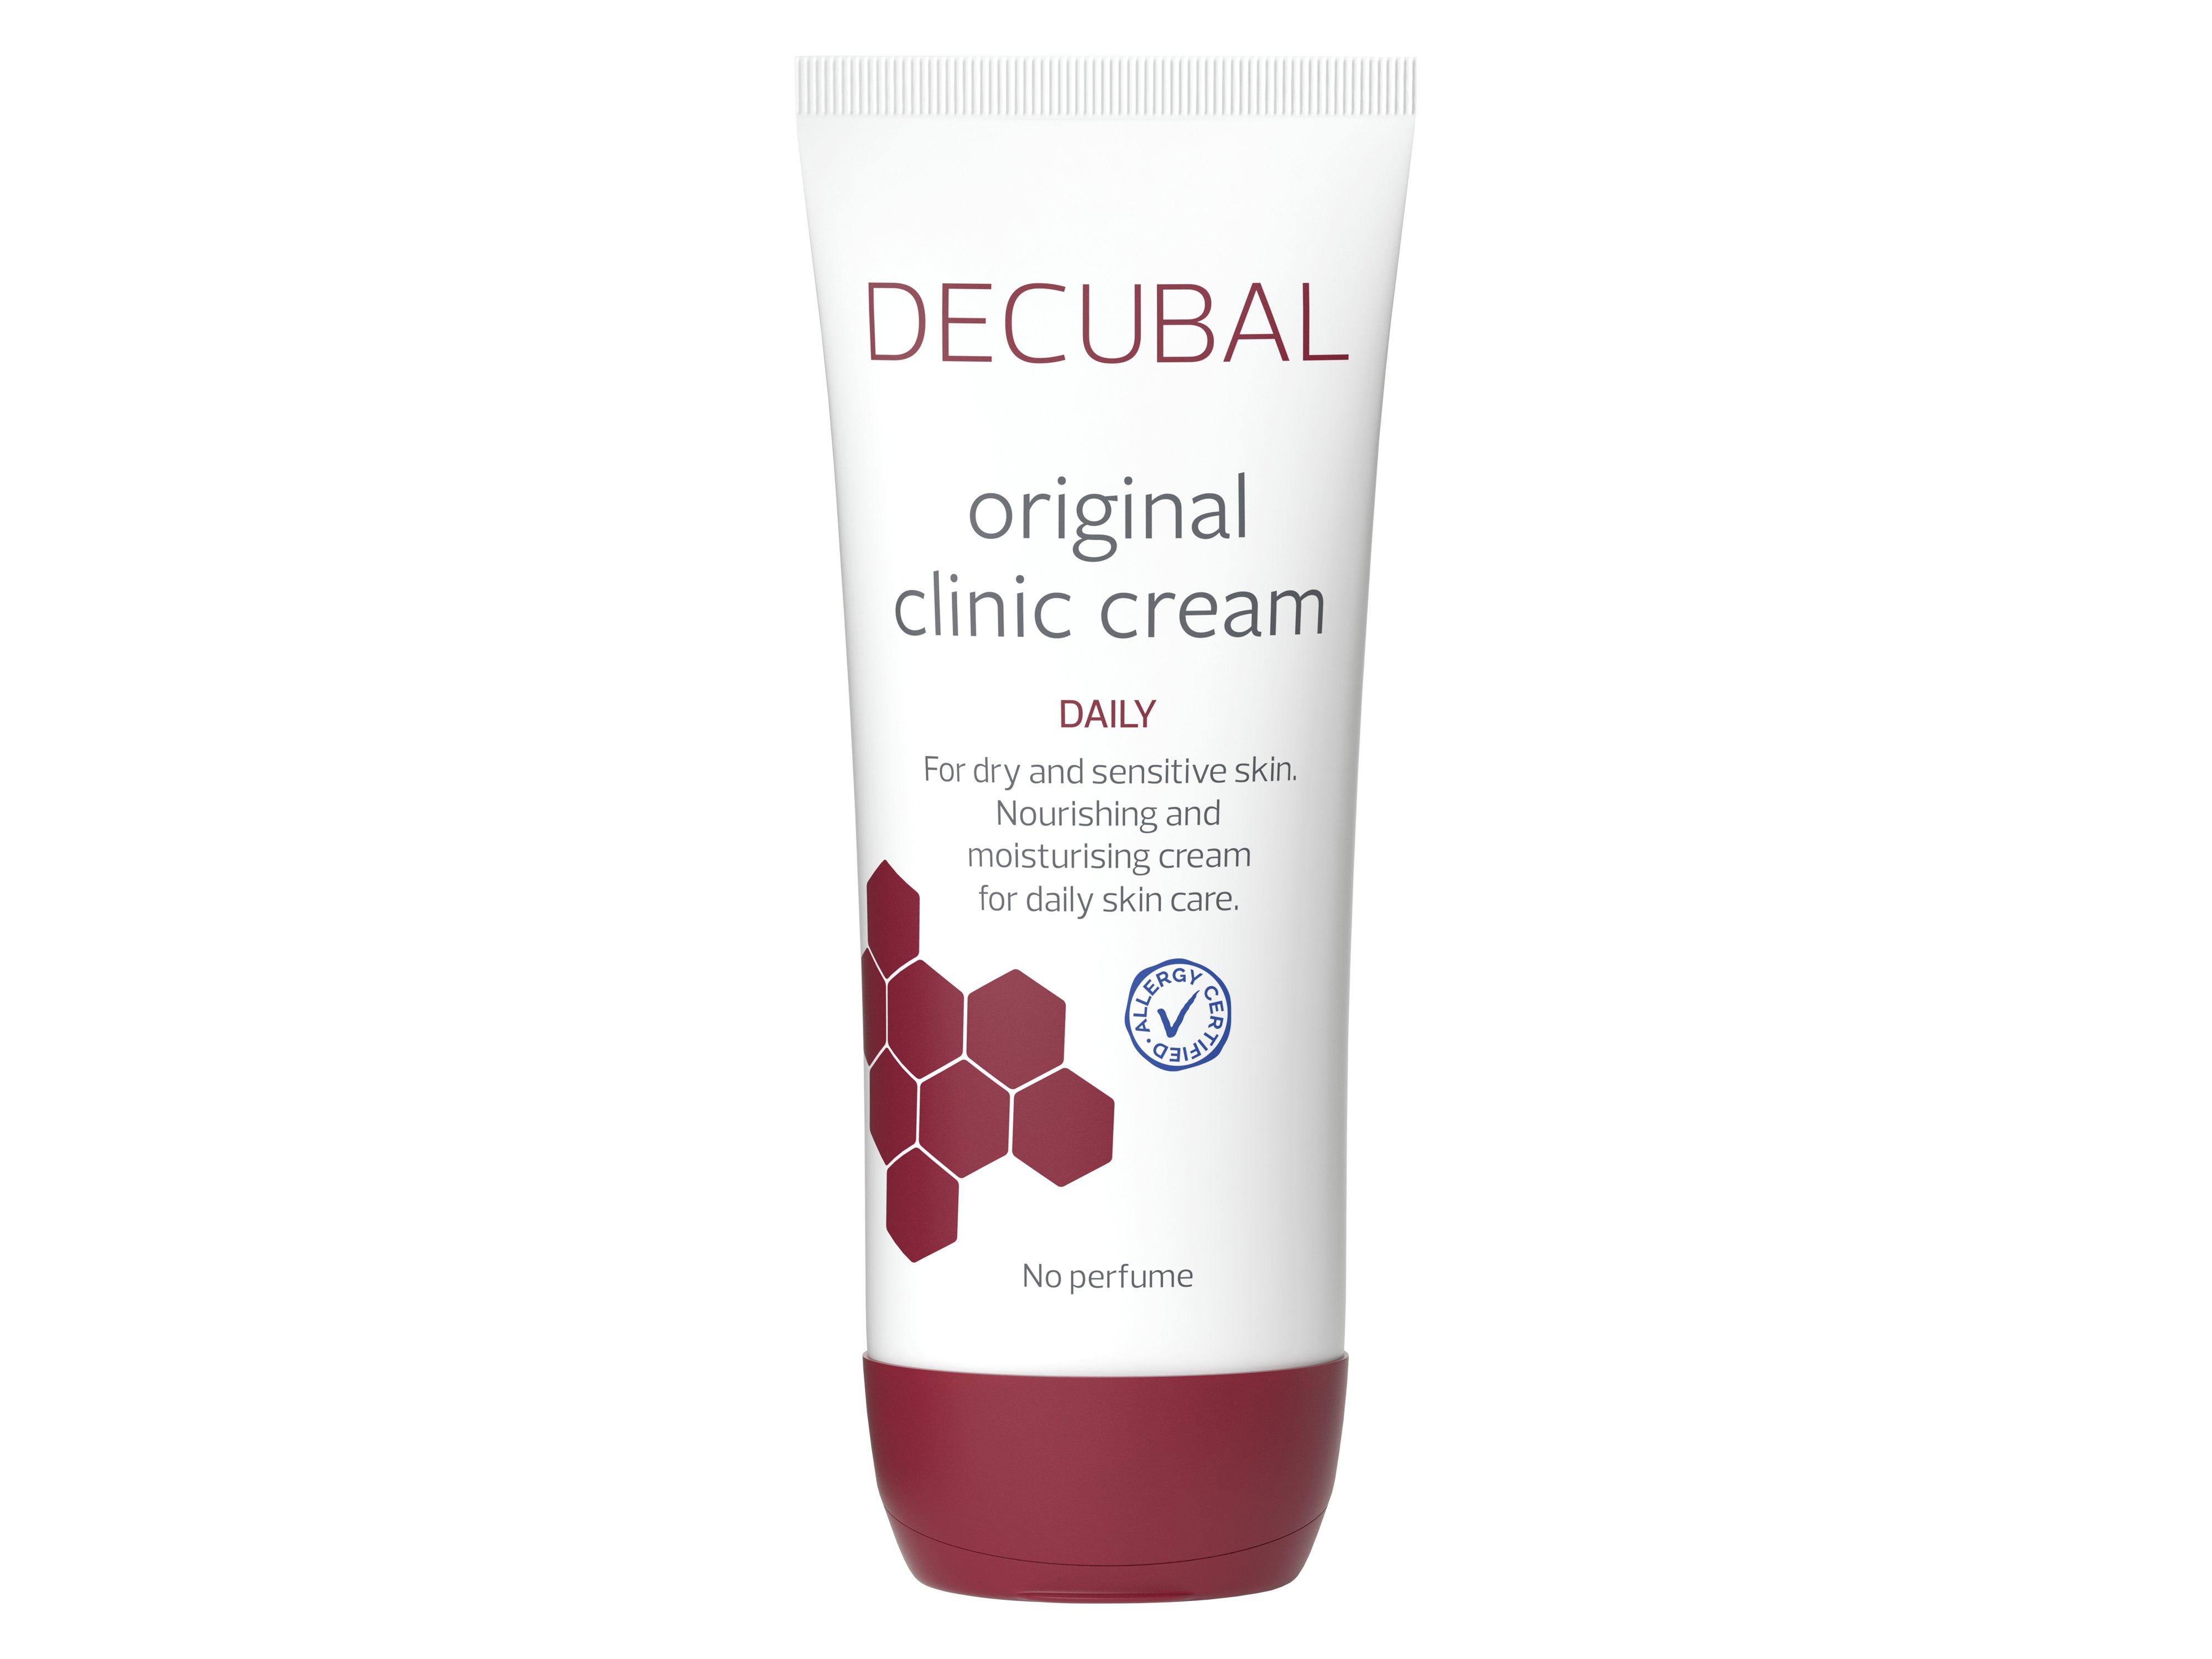 Decubal Original Clinic Cream Daily, 100 g